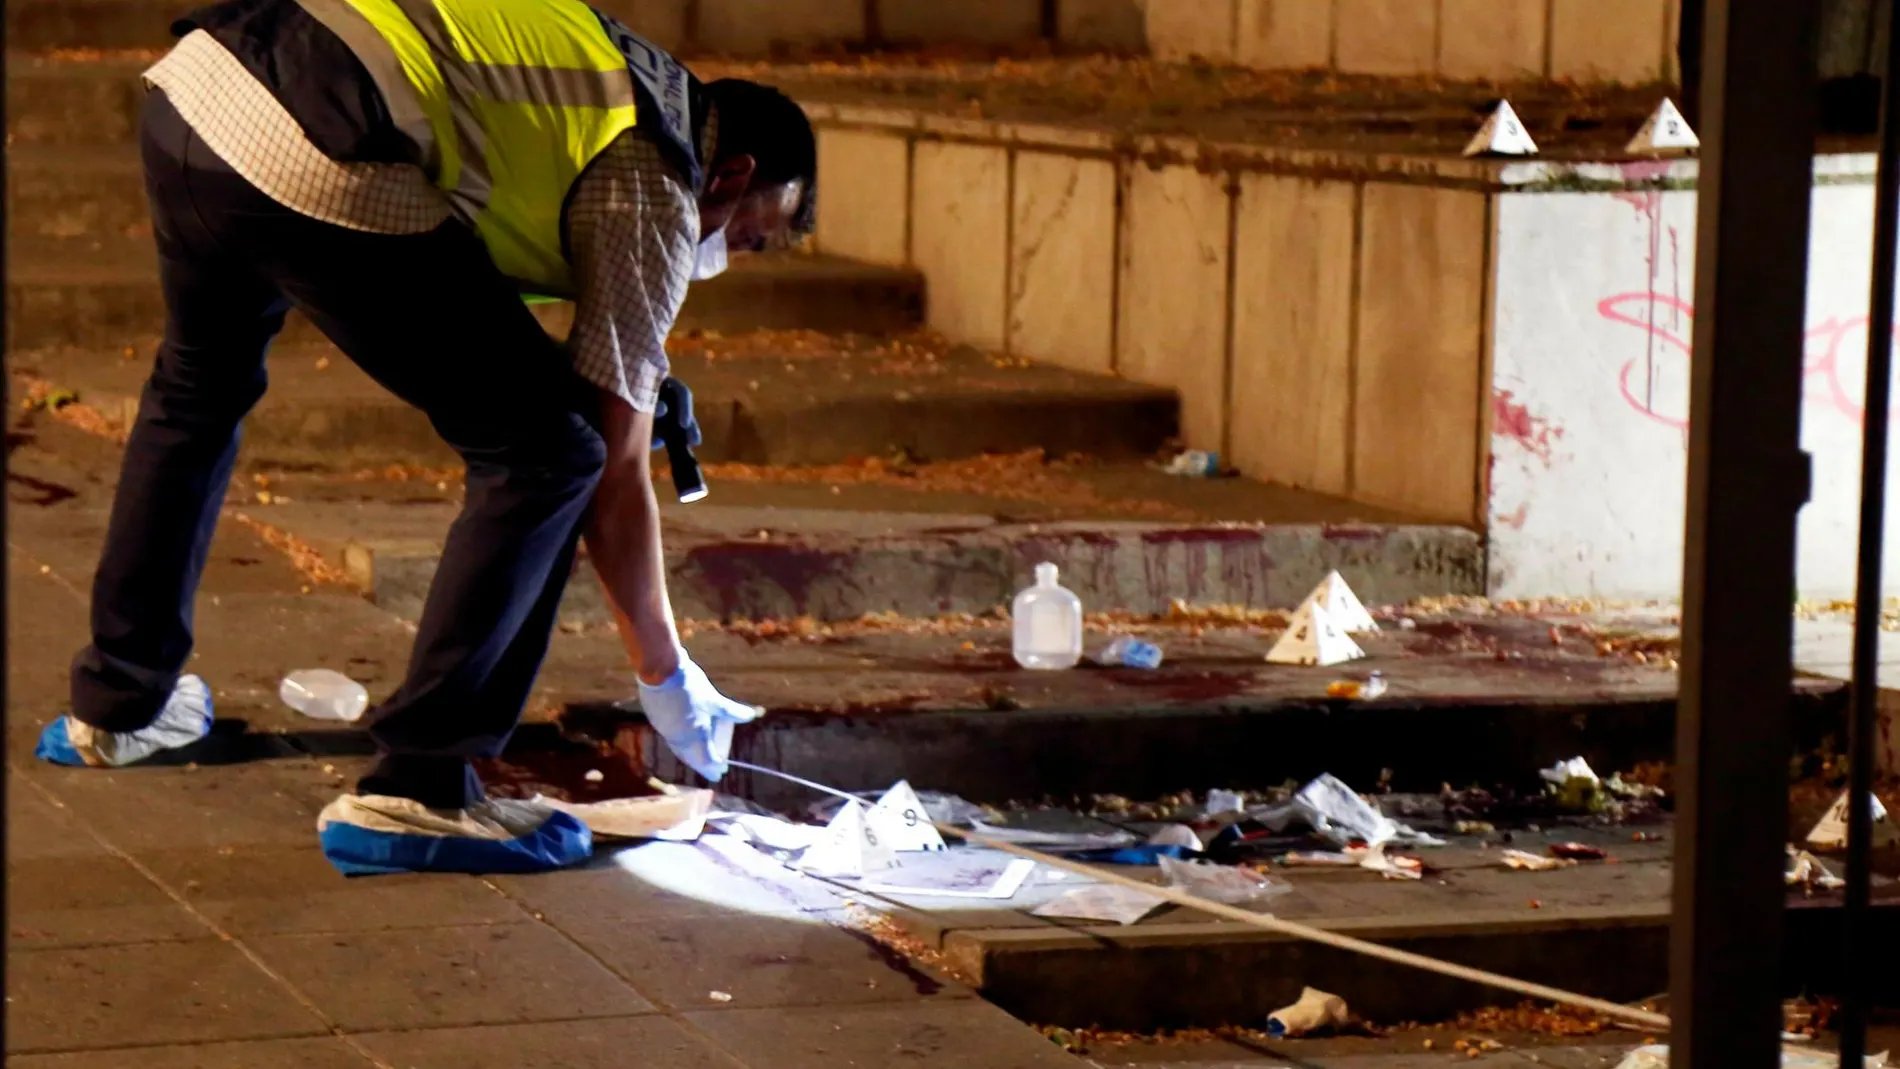 Miembros de la policía científica inspeccionan el lugar donde un hombre ha herido de gravedad con arma blanca a su supuesta expareja, en la céntrica Plaza de la Libertad de Granada.